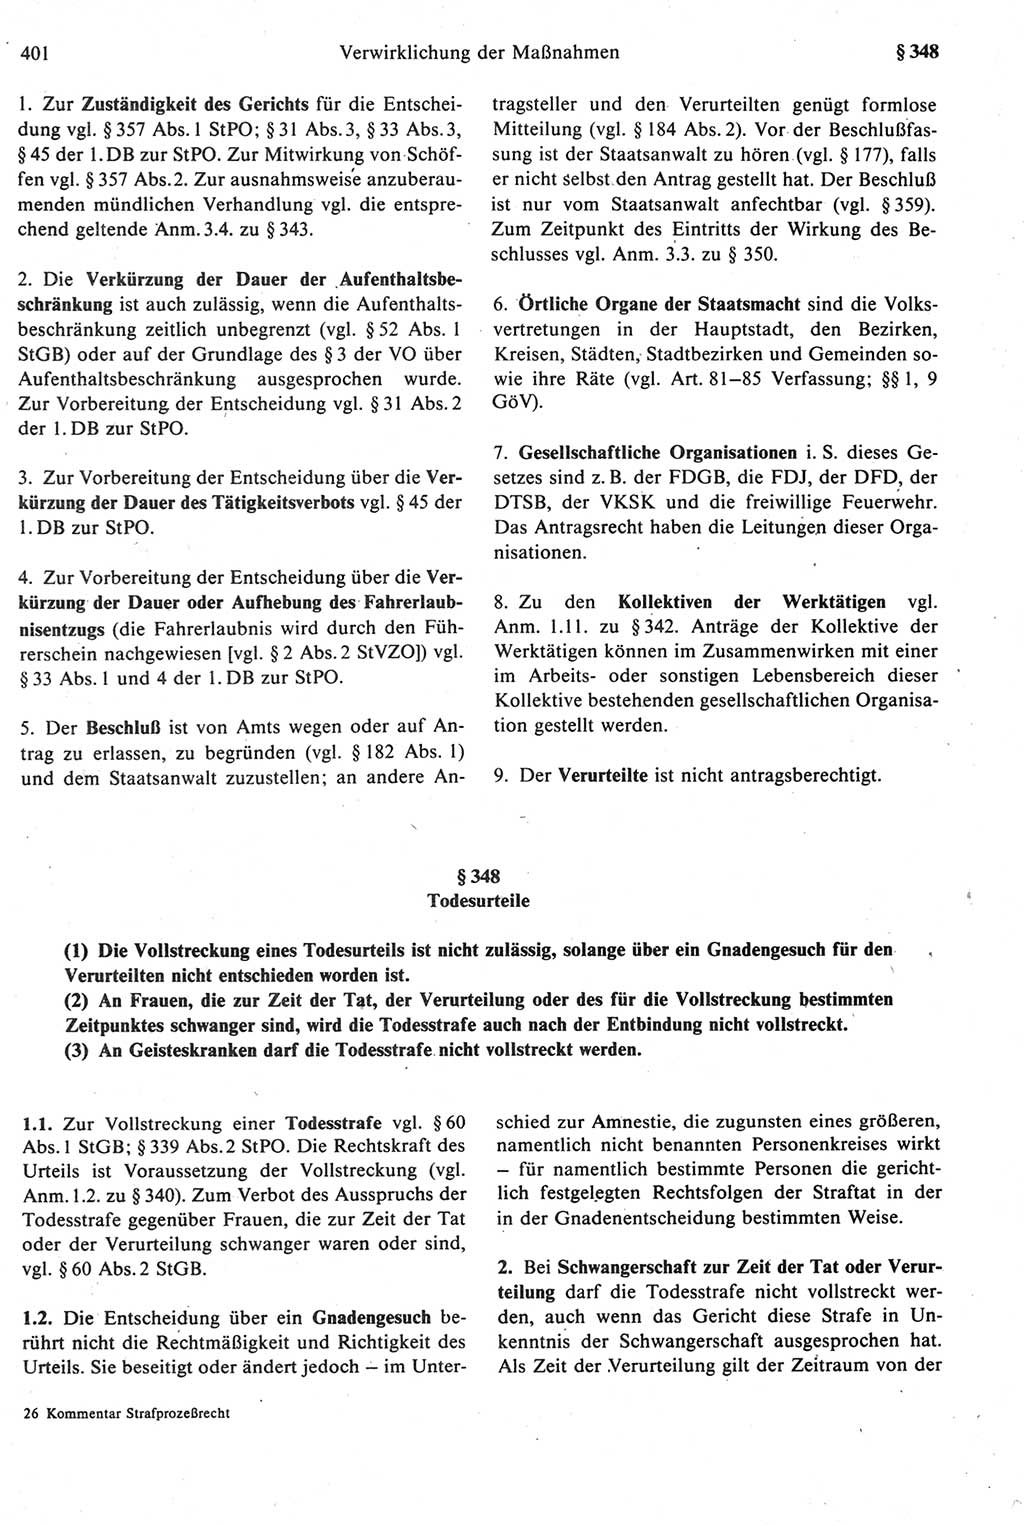 Strafprozeßrecht der DDR [Deutsche Demokratische Republik], Kommentar zur Strafprozeßordnung (StPO) 1987, Seite 401 (Strafprozeßr. DDR Komm. StPO 1987, S. 401)